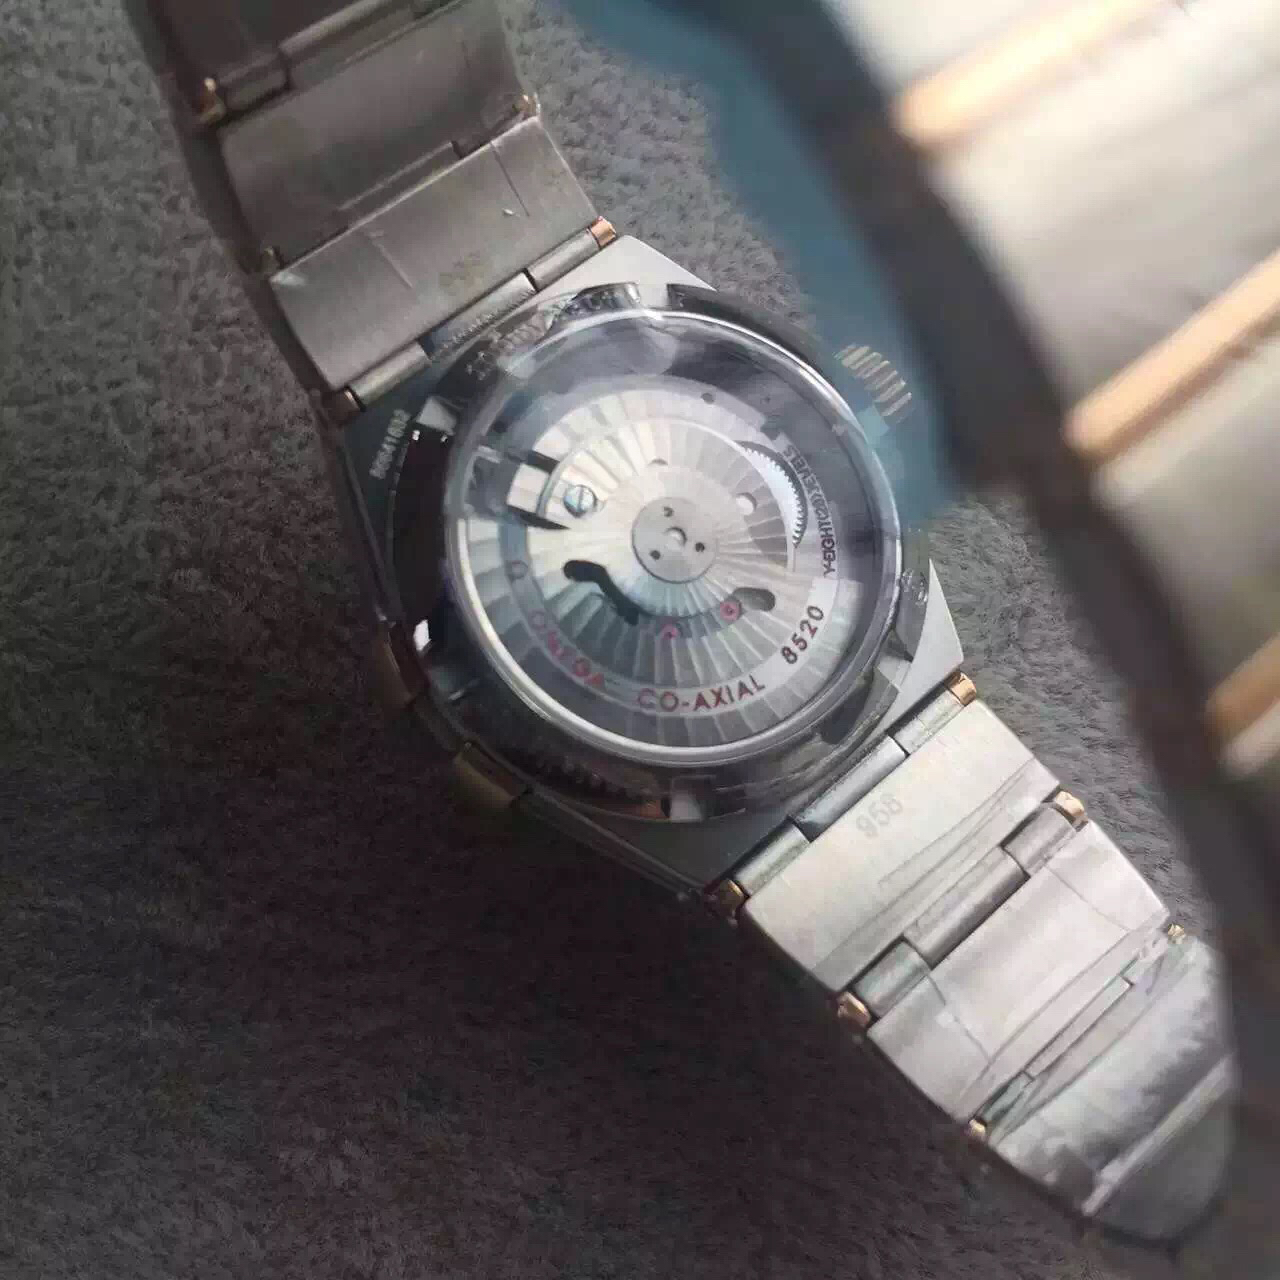 2023102323363487 - 歐米茄星座女款機械錶高仿手錶 V6歐米茄星座123.25.27.20.57.004￥3180